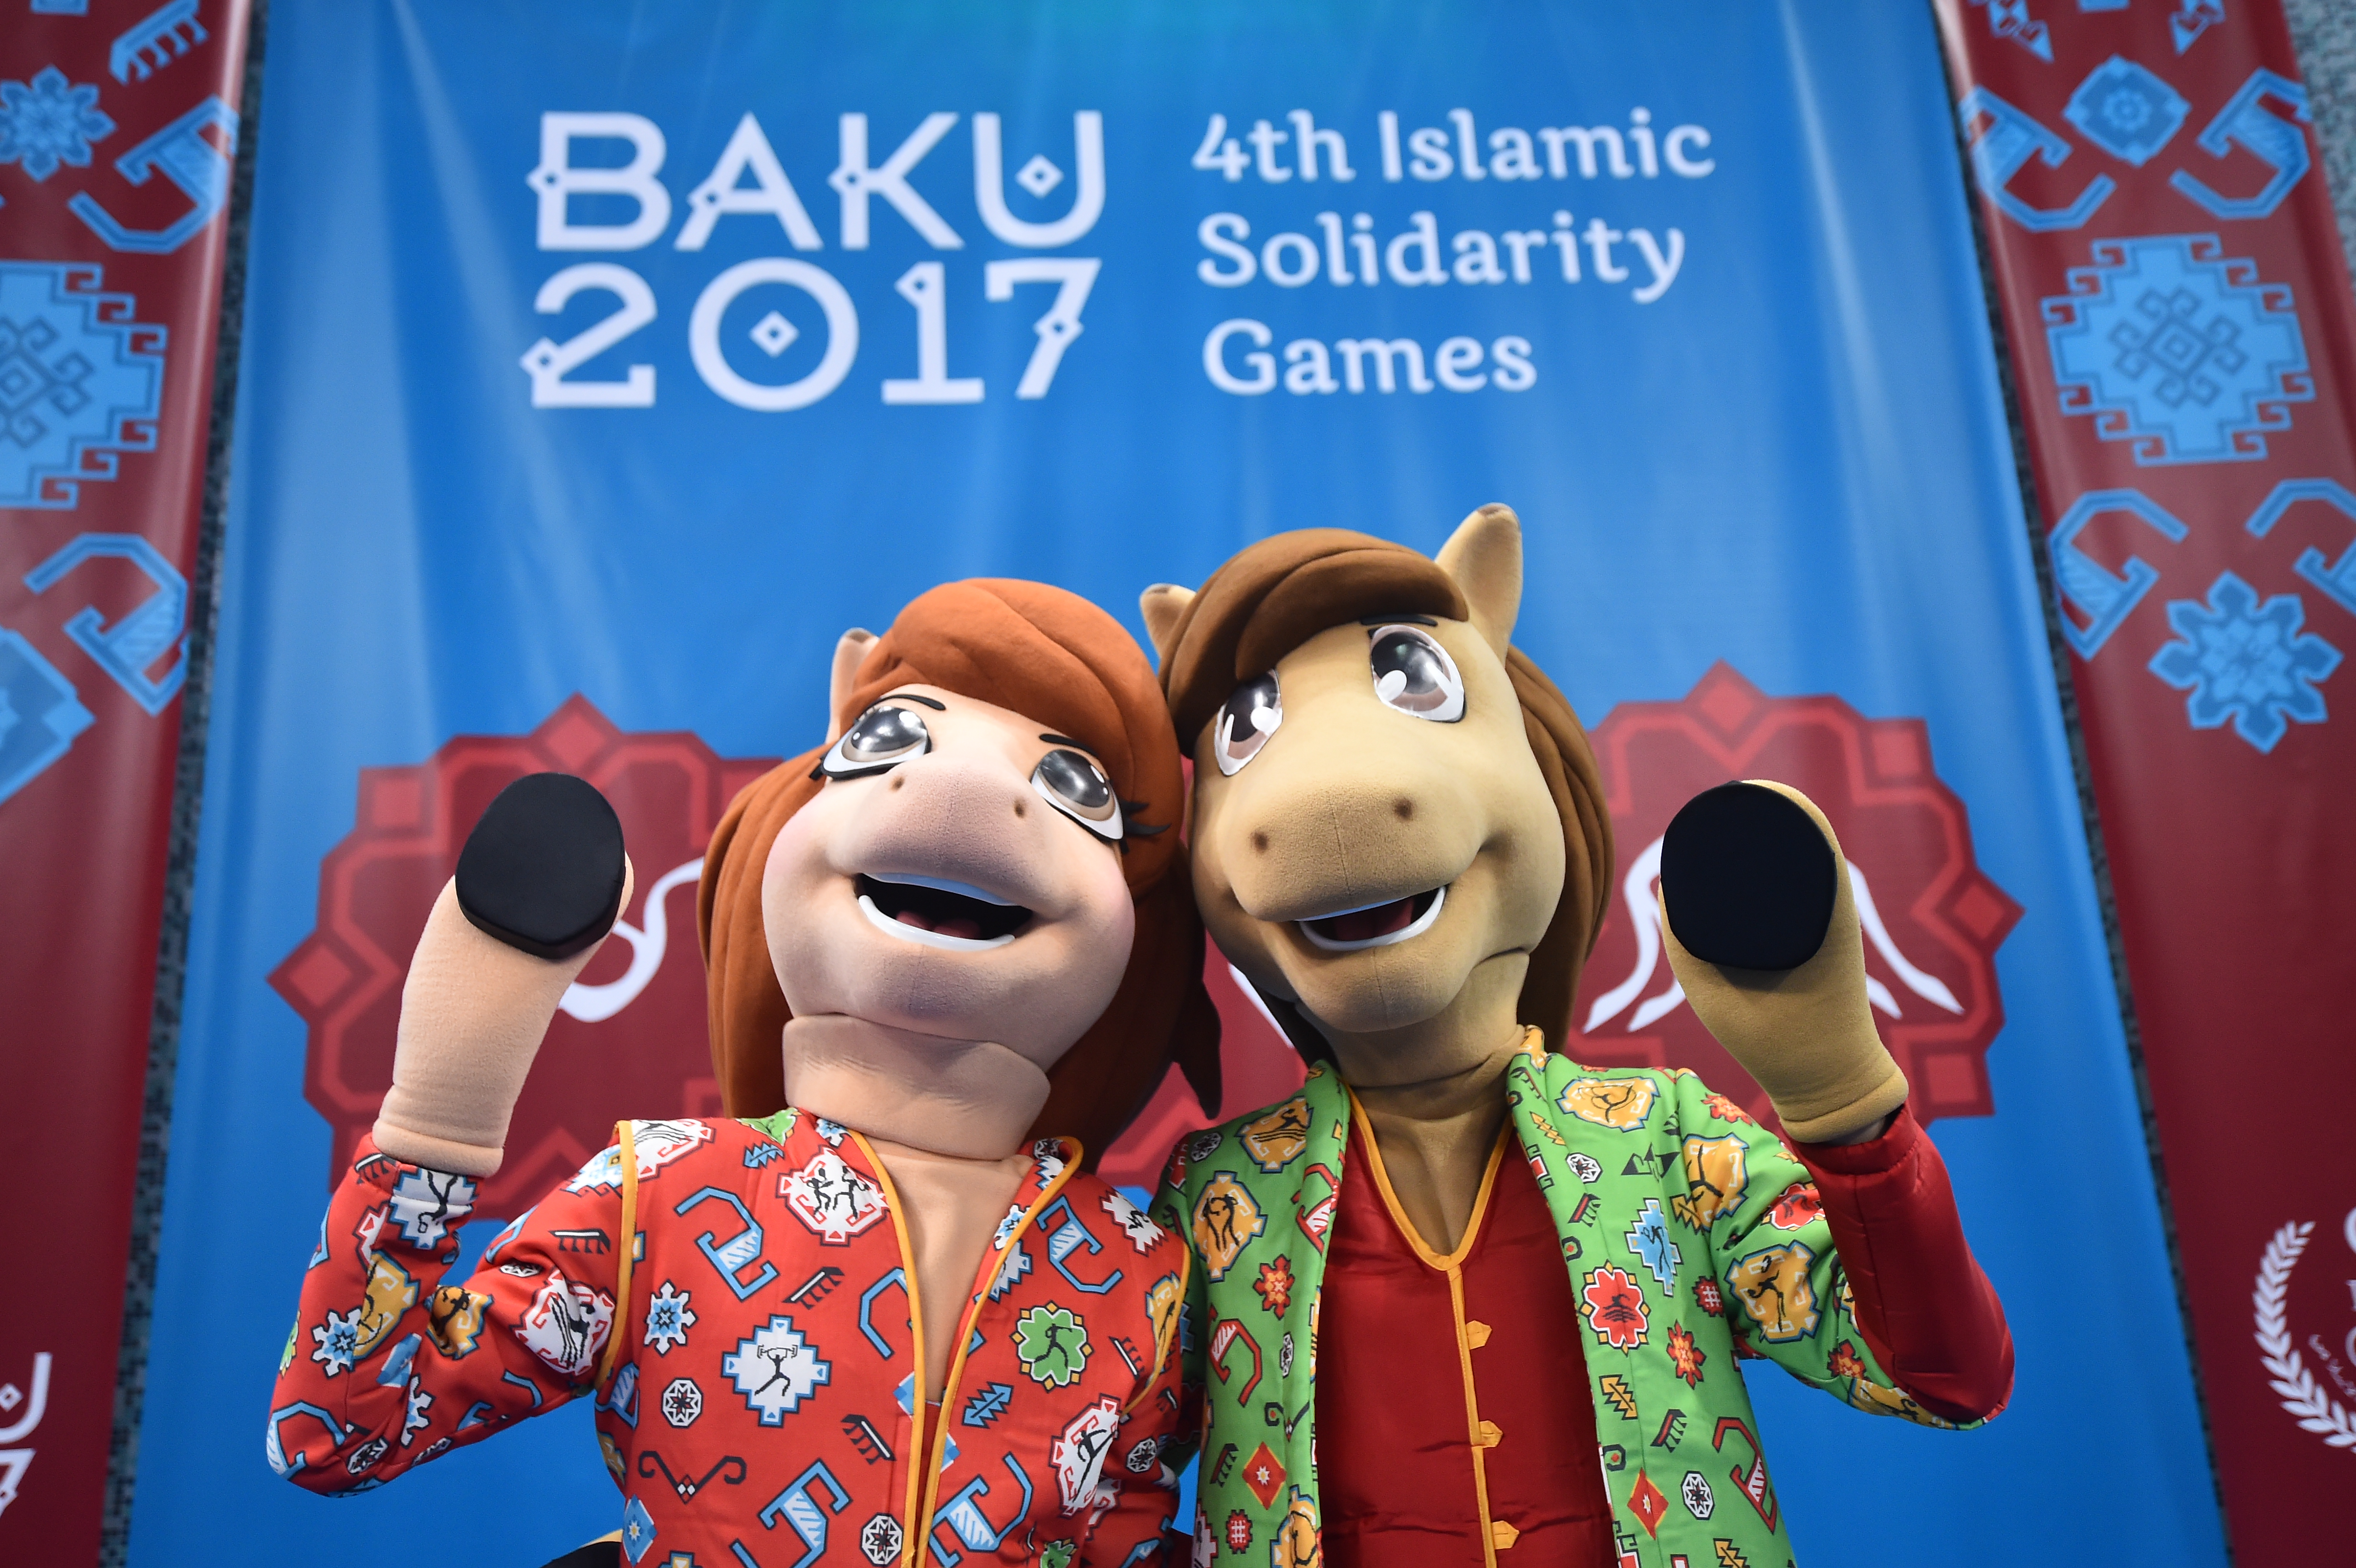  يتم عرض تمائم رسمية لدورة ألعاب التضامن الإسلامي الرابع باكو 2017